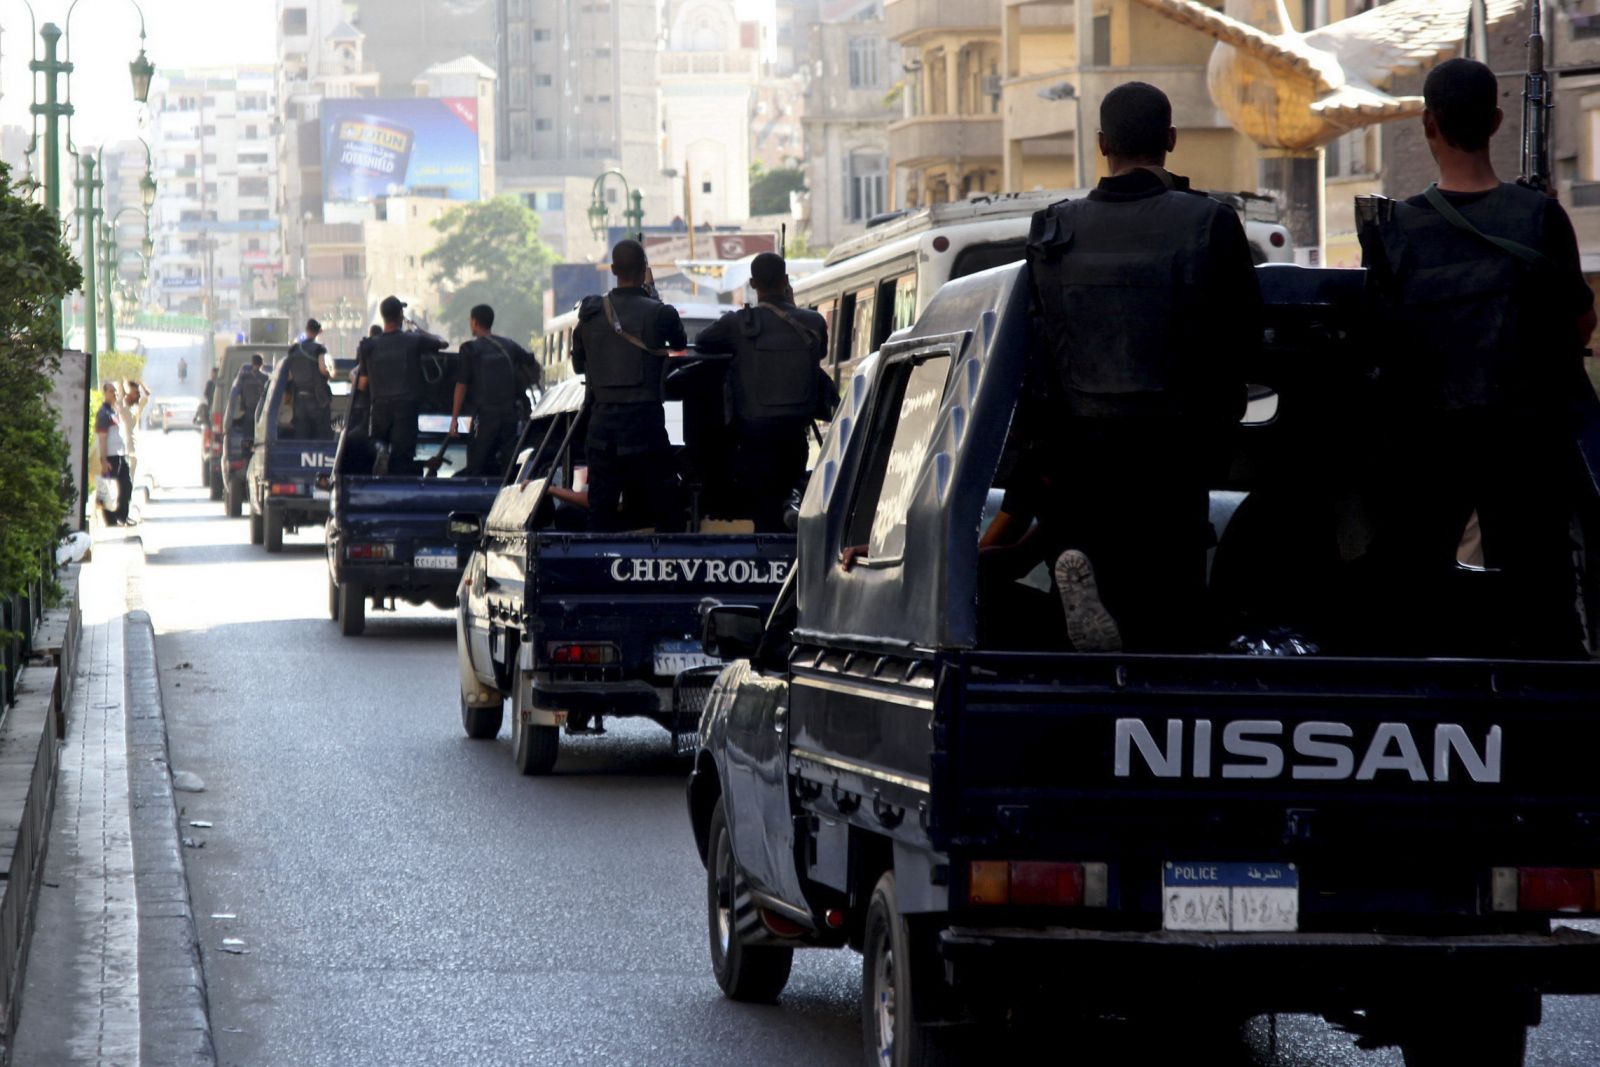   ضبط 17قطعة سلاح و 155 جرام هيروين خلال حملة في كفر الشيخ